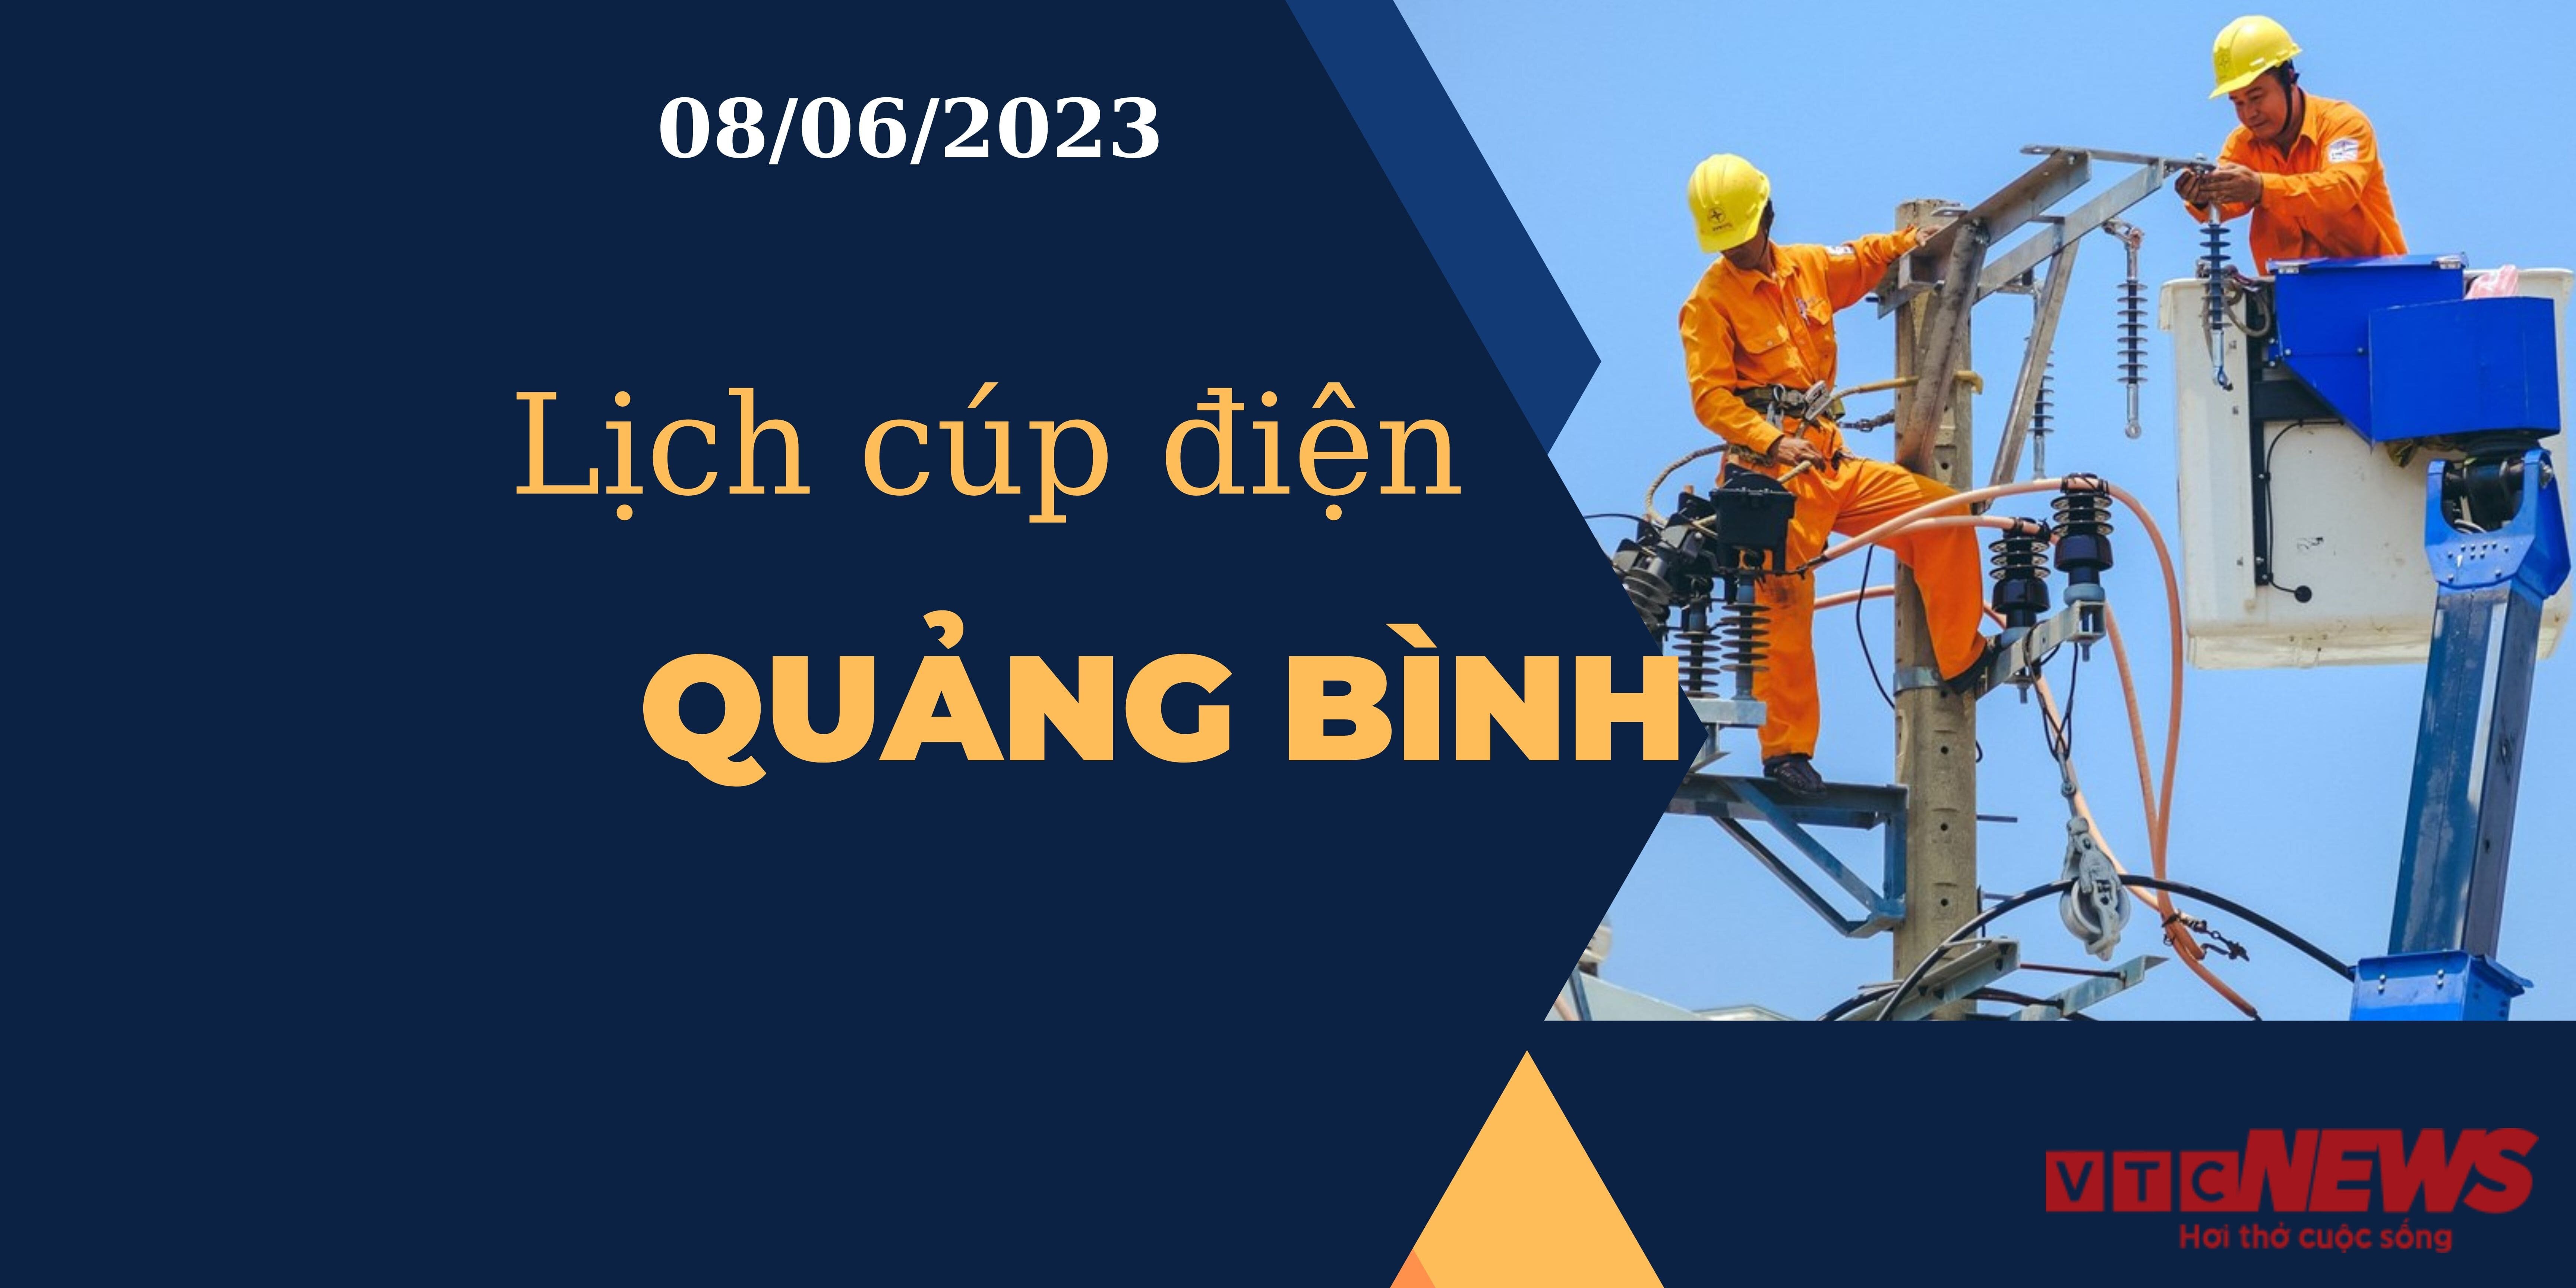 Lịch cúp điện hôm nay tại Quảng Bình ngày 08/06/2023 - 1